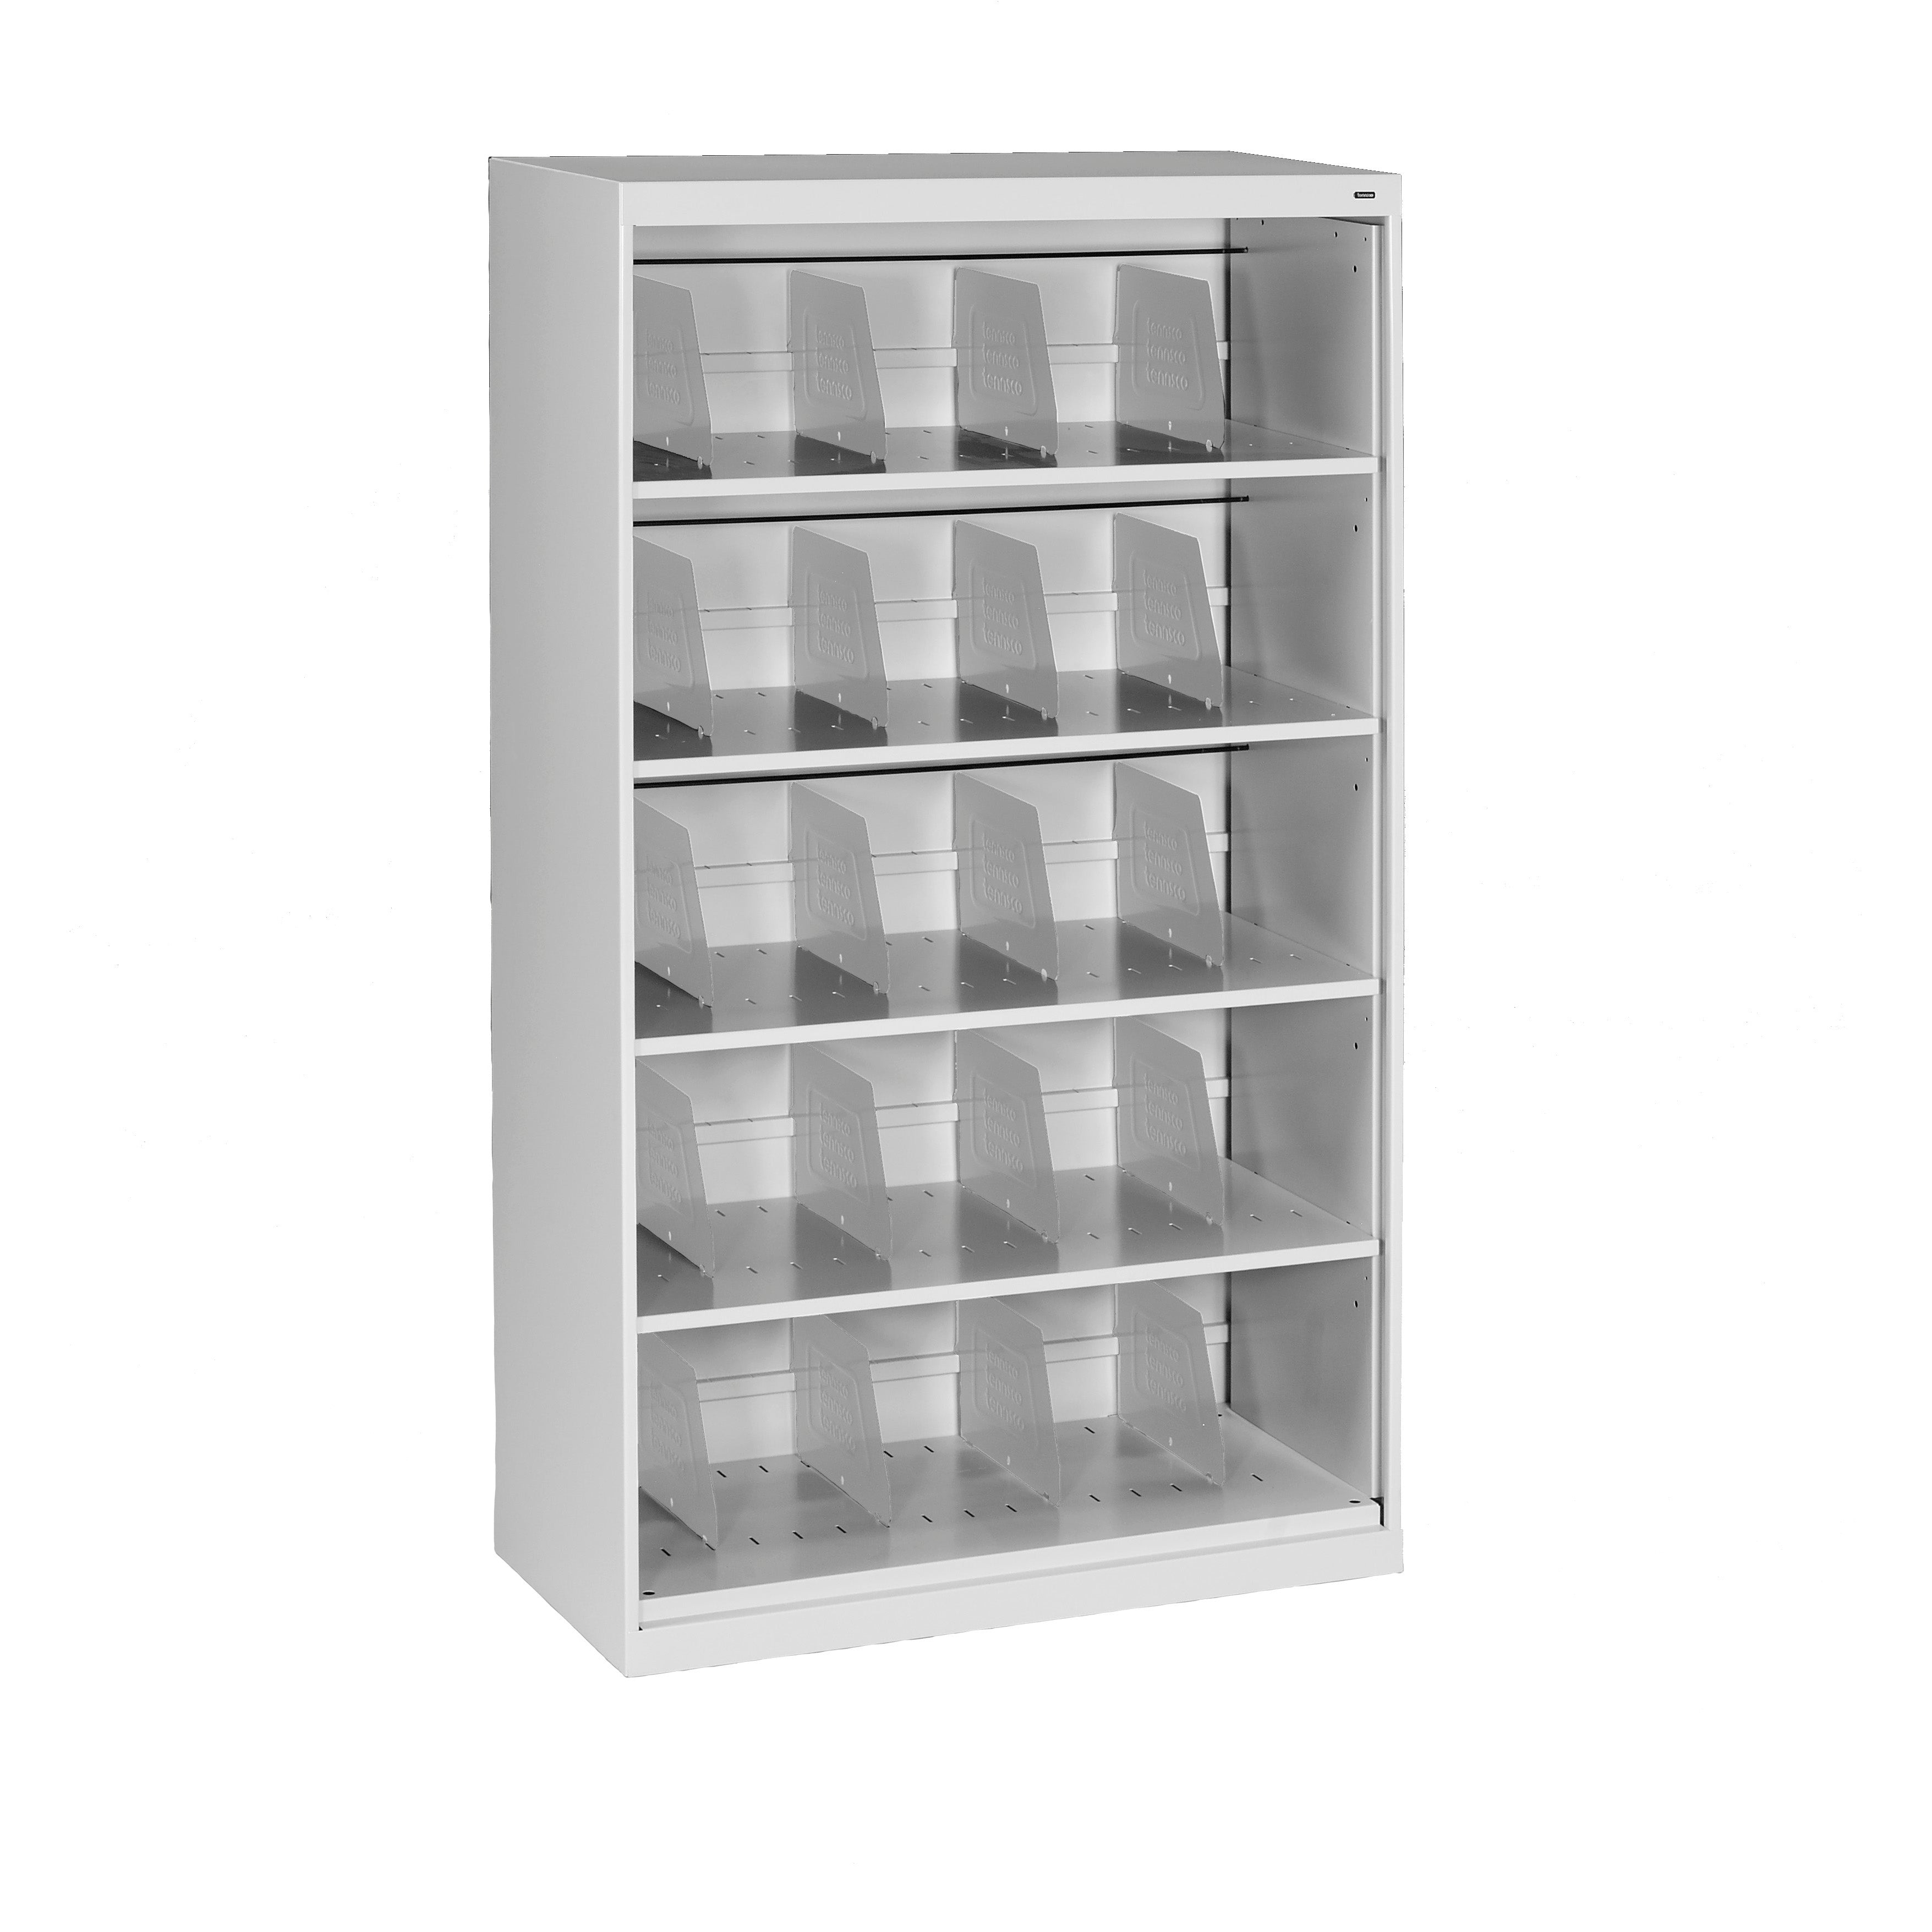 Tennsco Five-Shelf Fixed Shelf Lateral File - Open Style, FS350